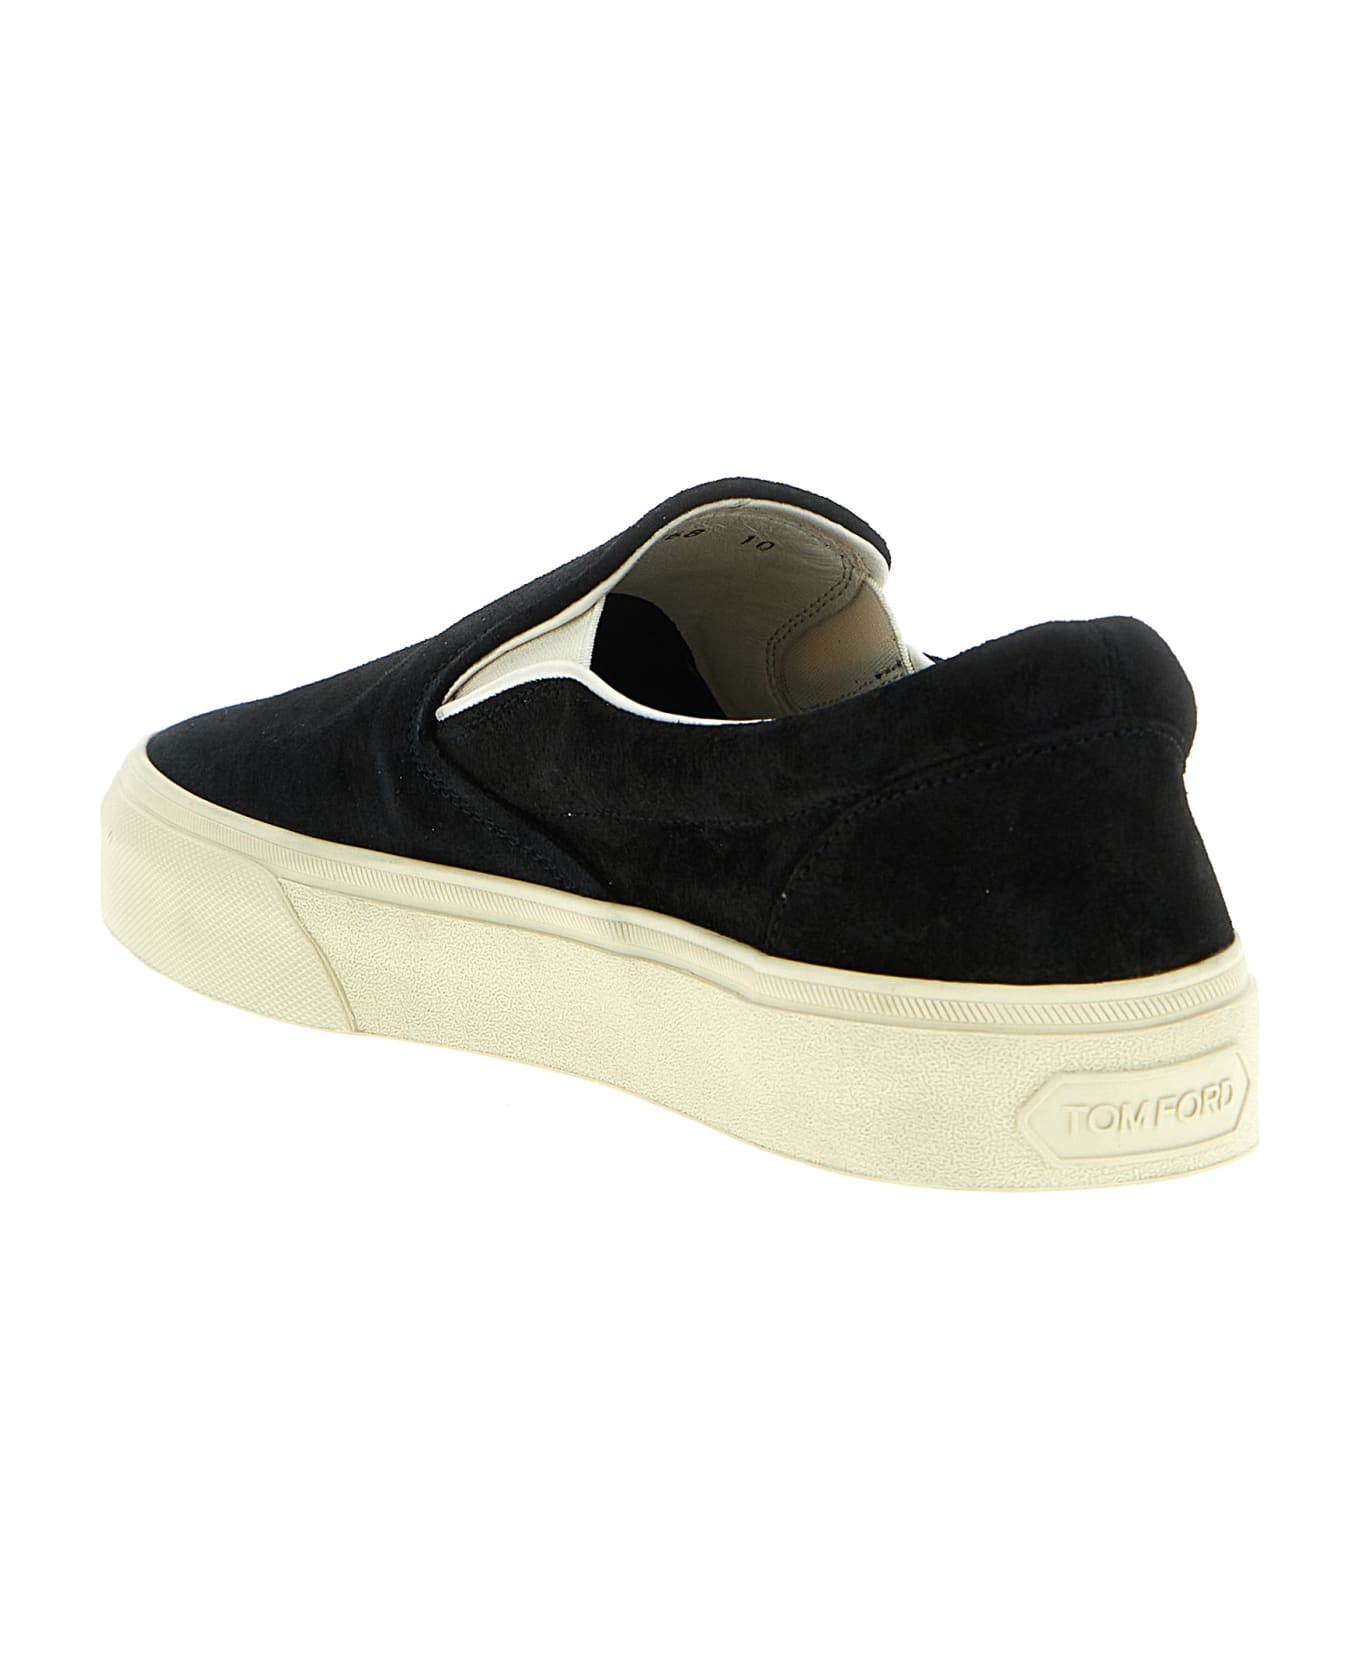 Tom Ford 'jude' Slip On Sneakers - White/Black スニーカー